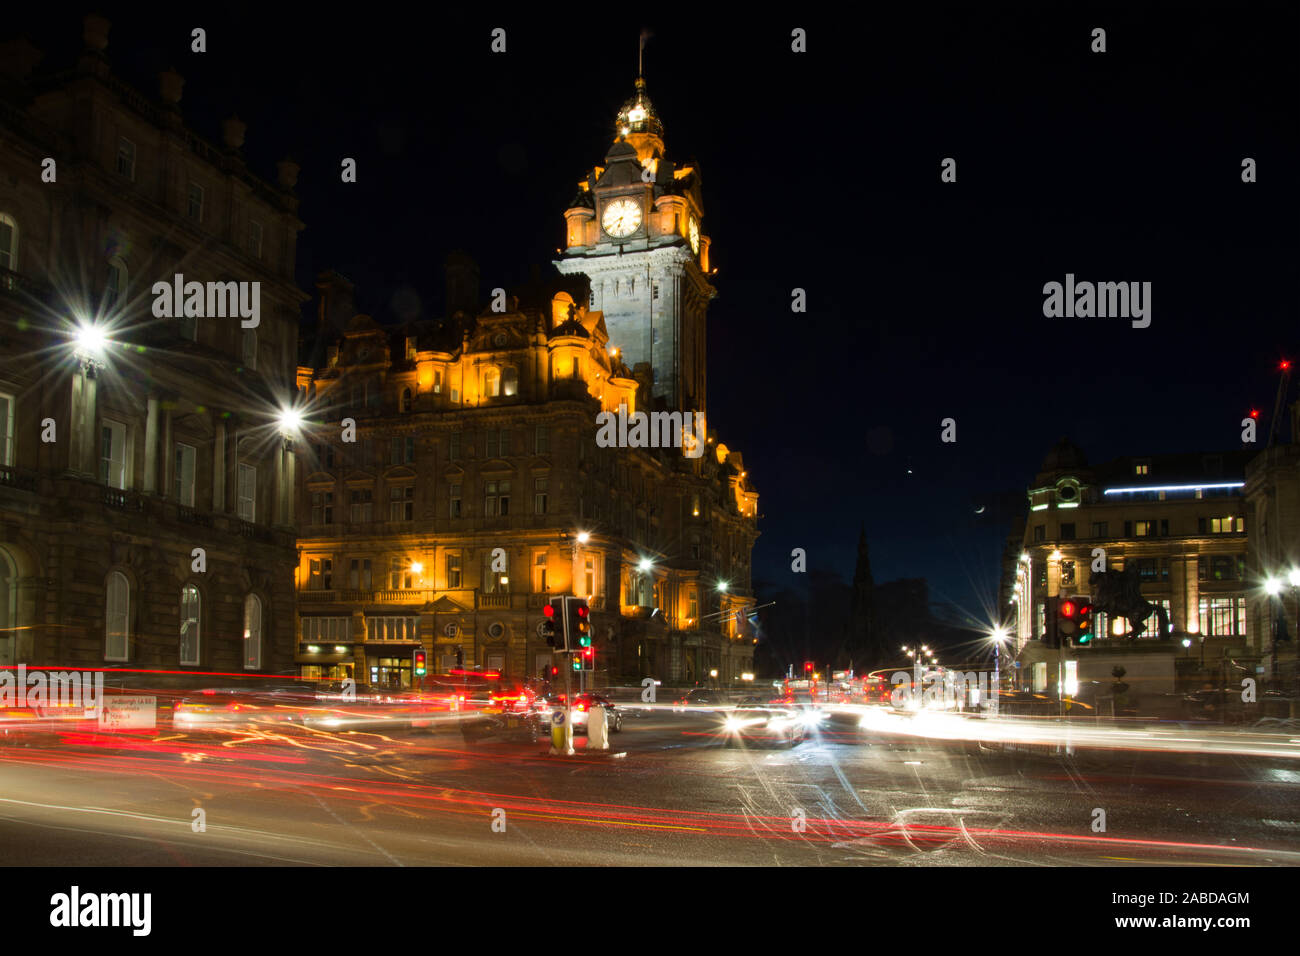 Nachtaufnahme von Edimburgo in Schottland, aufgenommen im Februar. Foto Stock